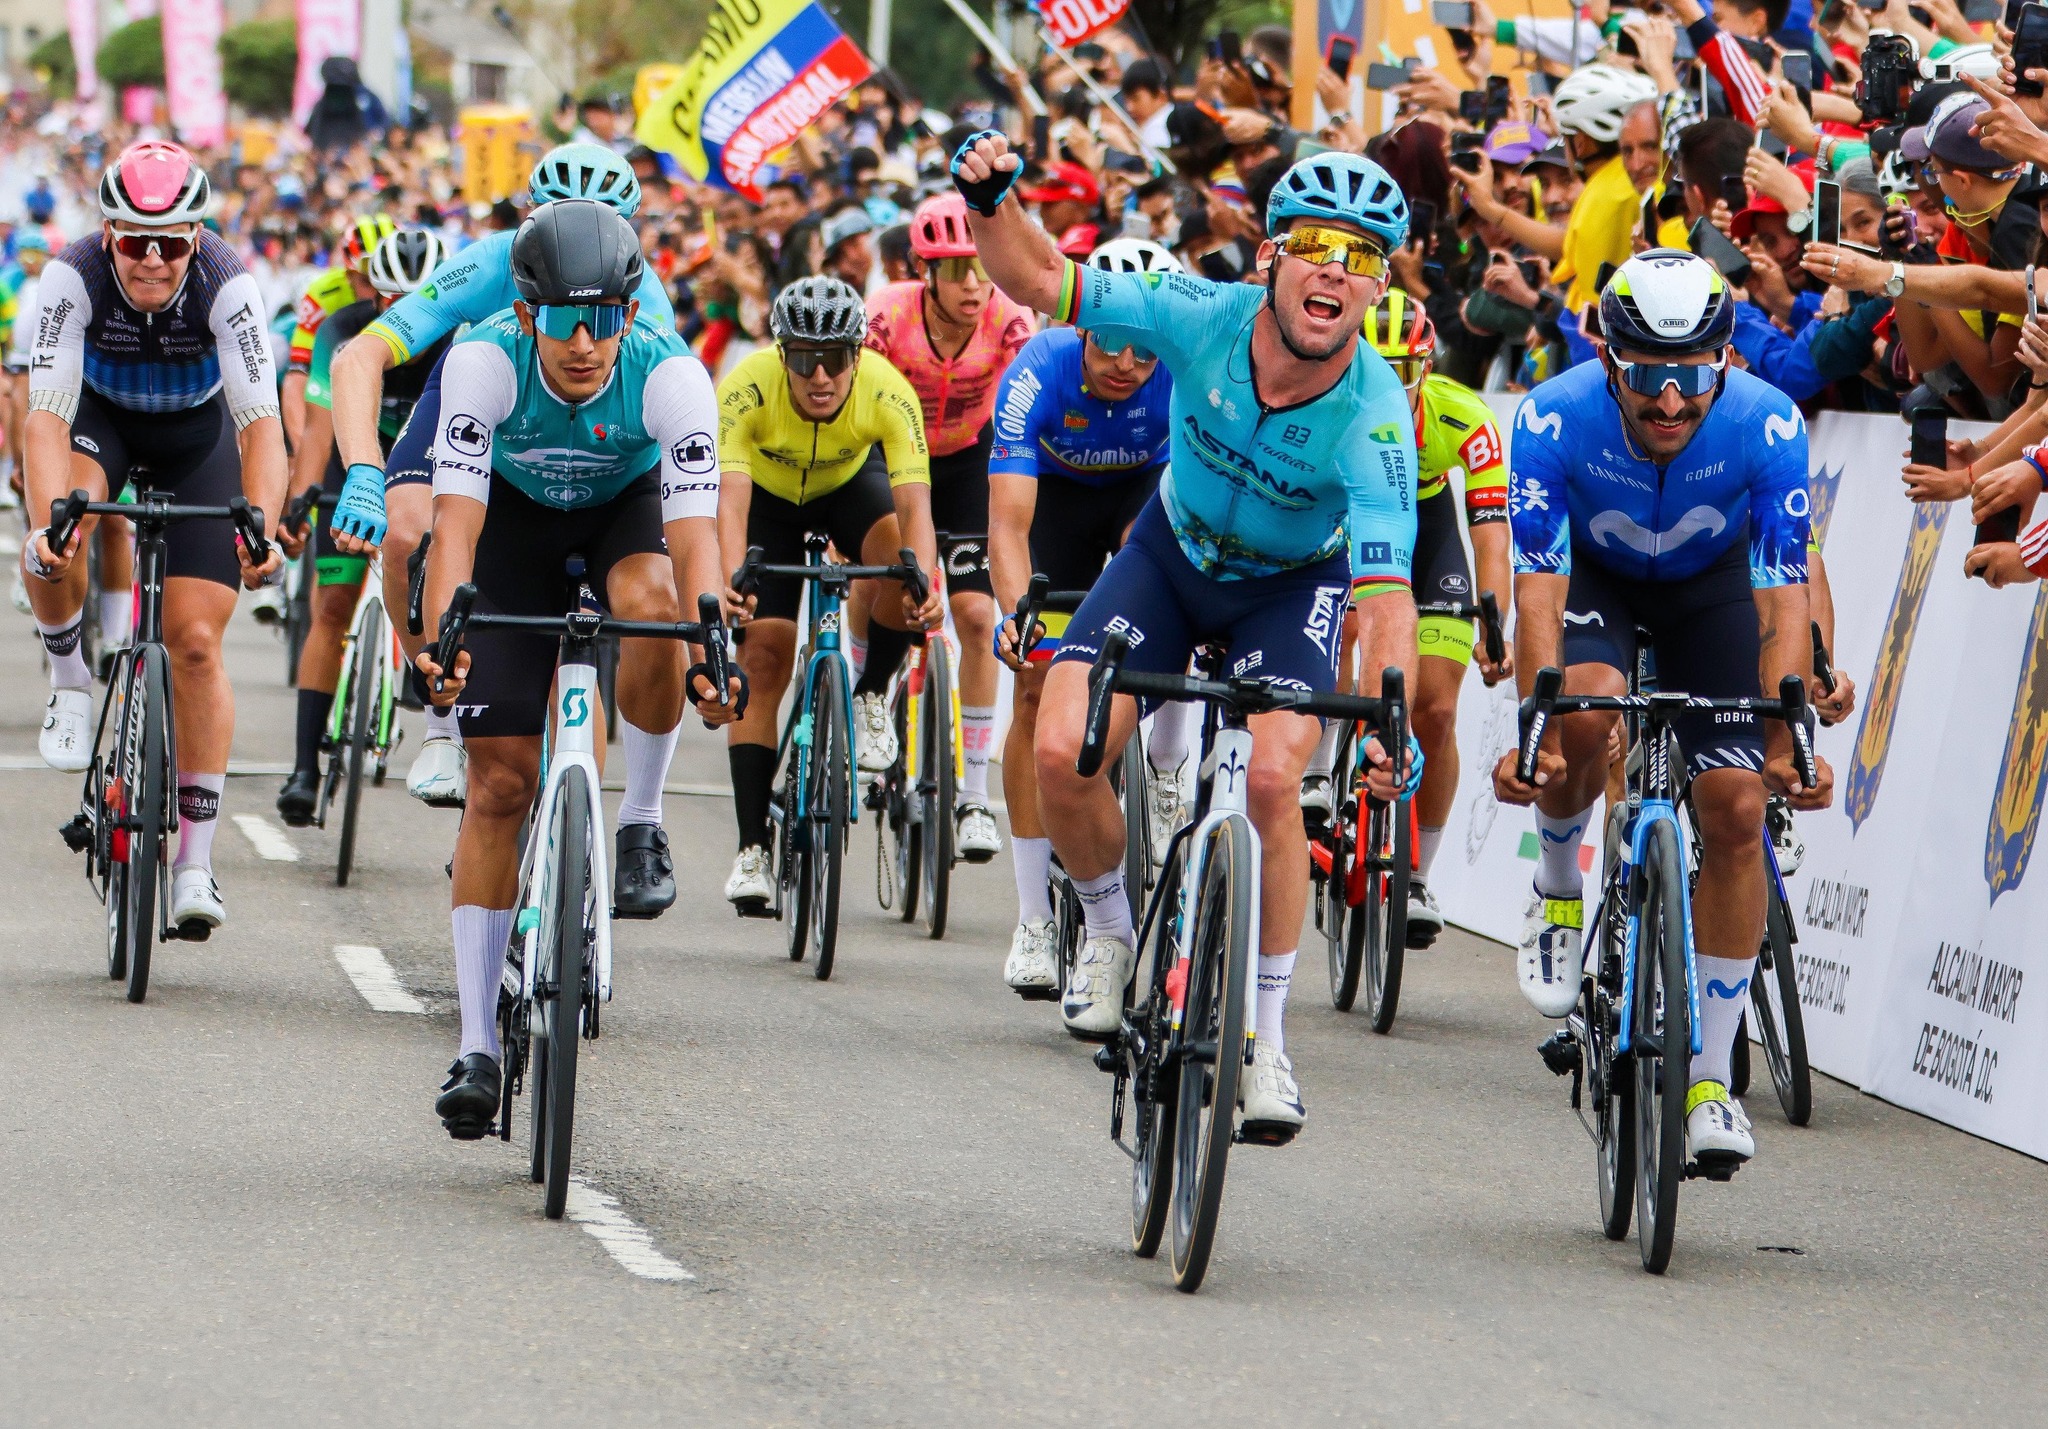 Classement de la 4ème étape du Tour Colombia, remportée par Mark Cavendish.